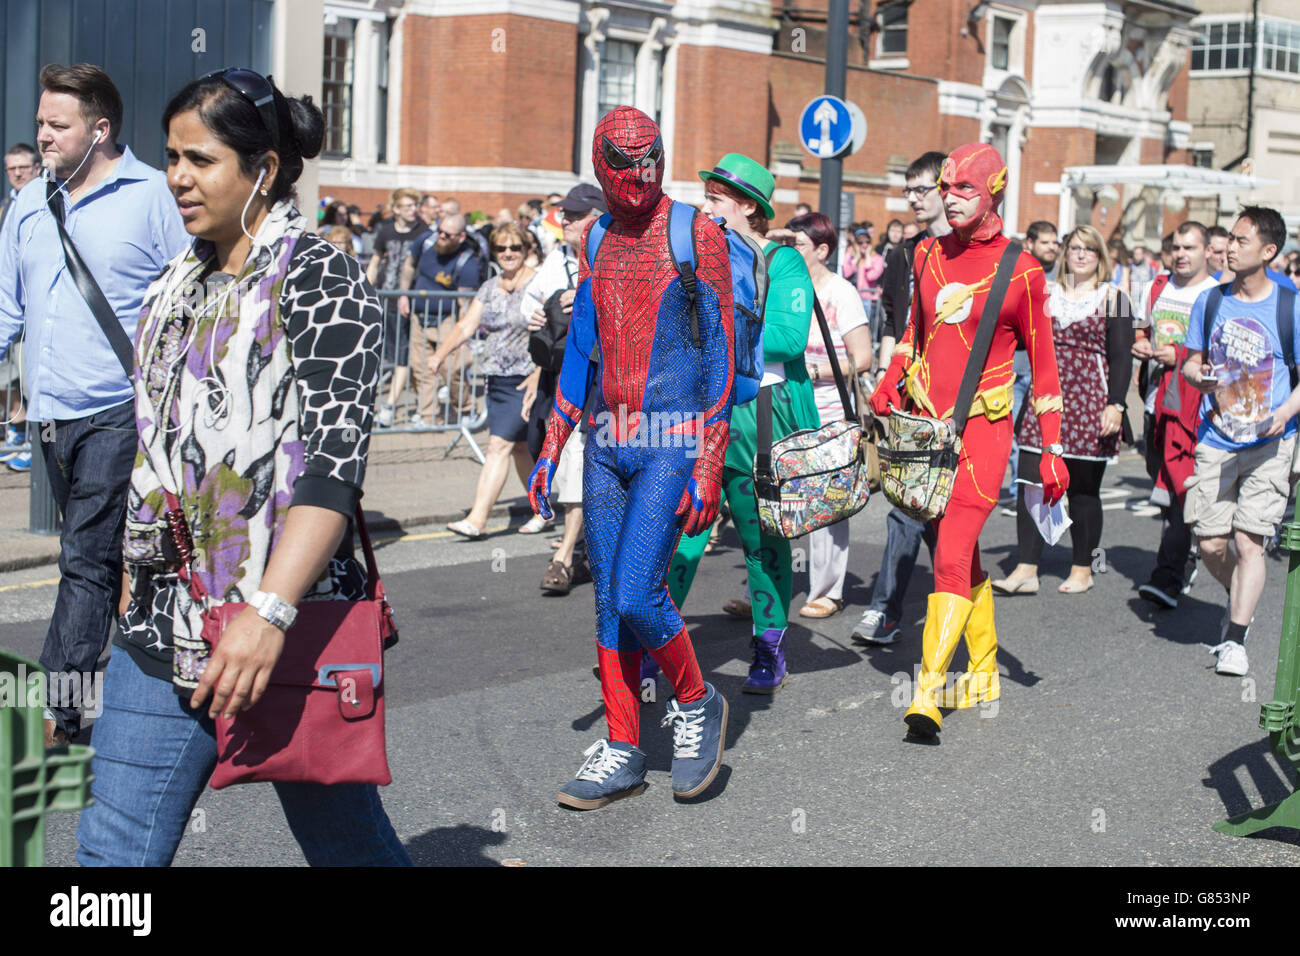 Besucher in Kostümen stehen vor der London Film and Comic Con, die im Olympia in Kensington, London, stattfindet. Stockfoto